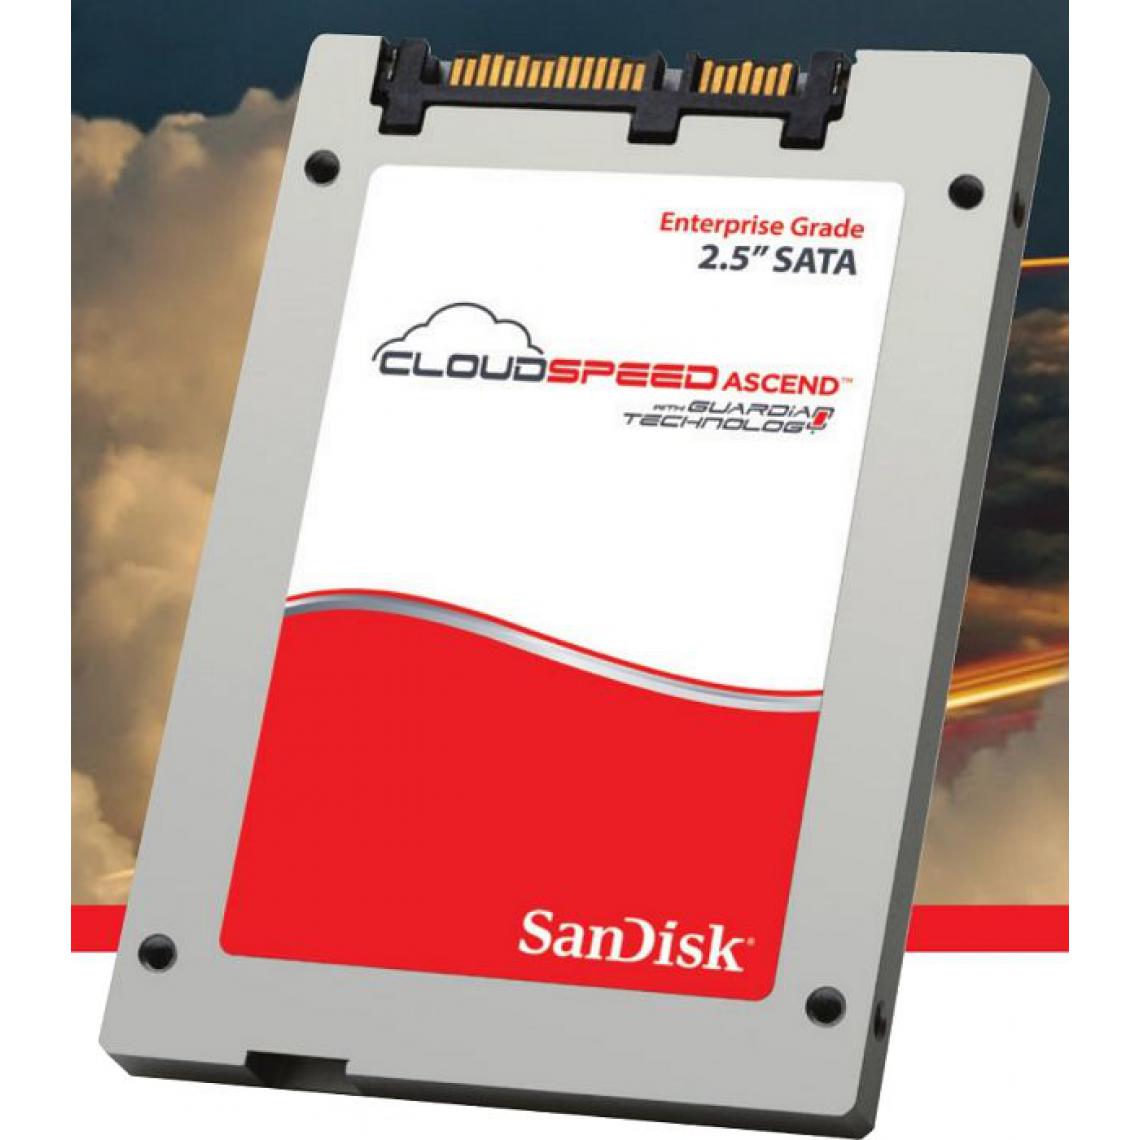 Sandisk - CloudSpeed Ascend SSD 240Go CloudSpeed Ascend SSD 240Go Enterprise 6,4cm 2,5 pouces SATA 6Go/s 19nm eMLC lecture intensive - SSD Interne